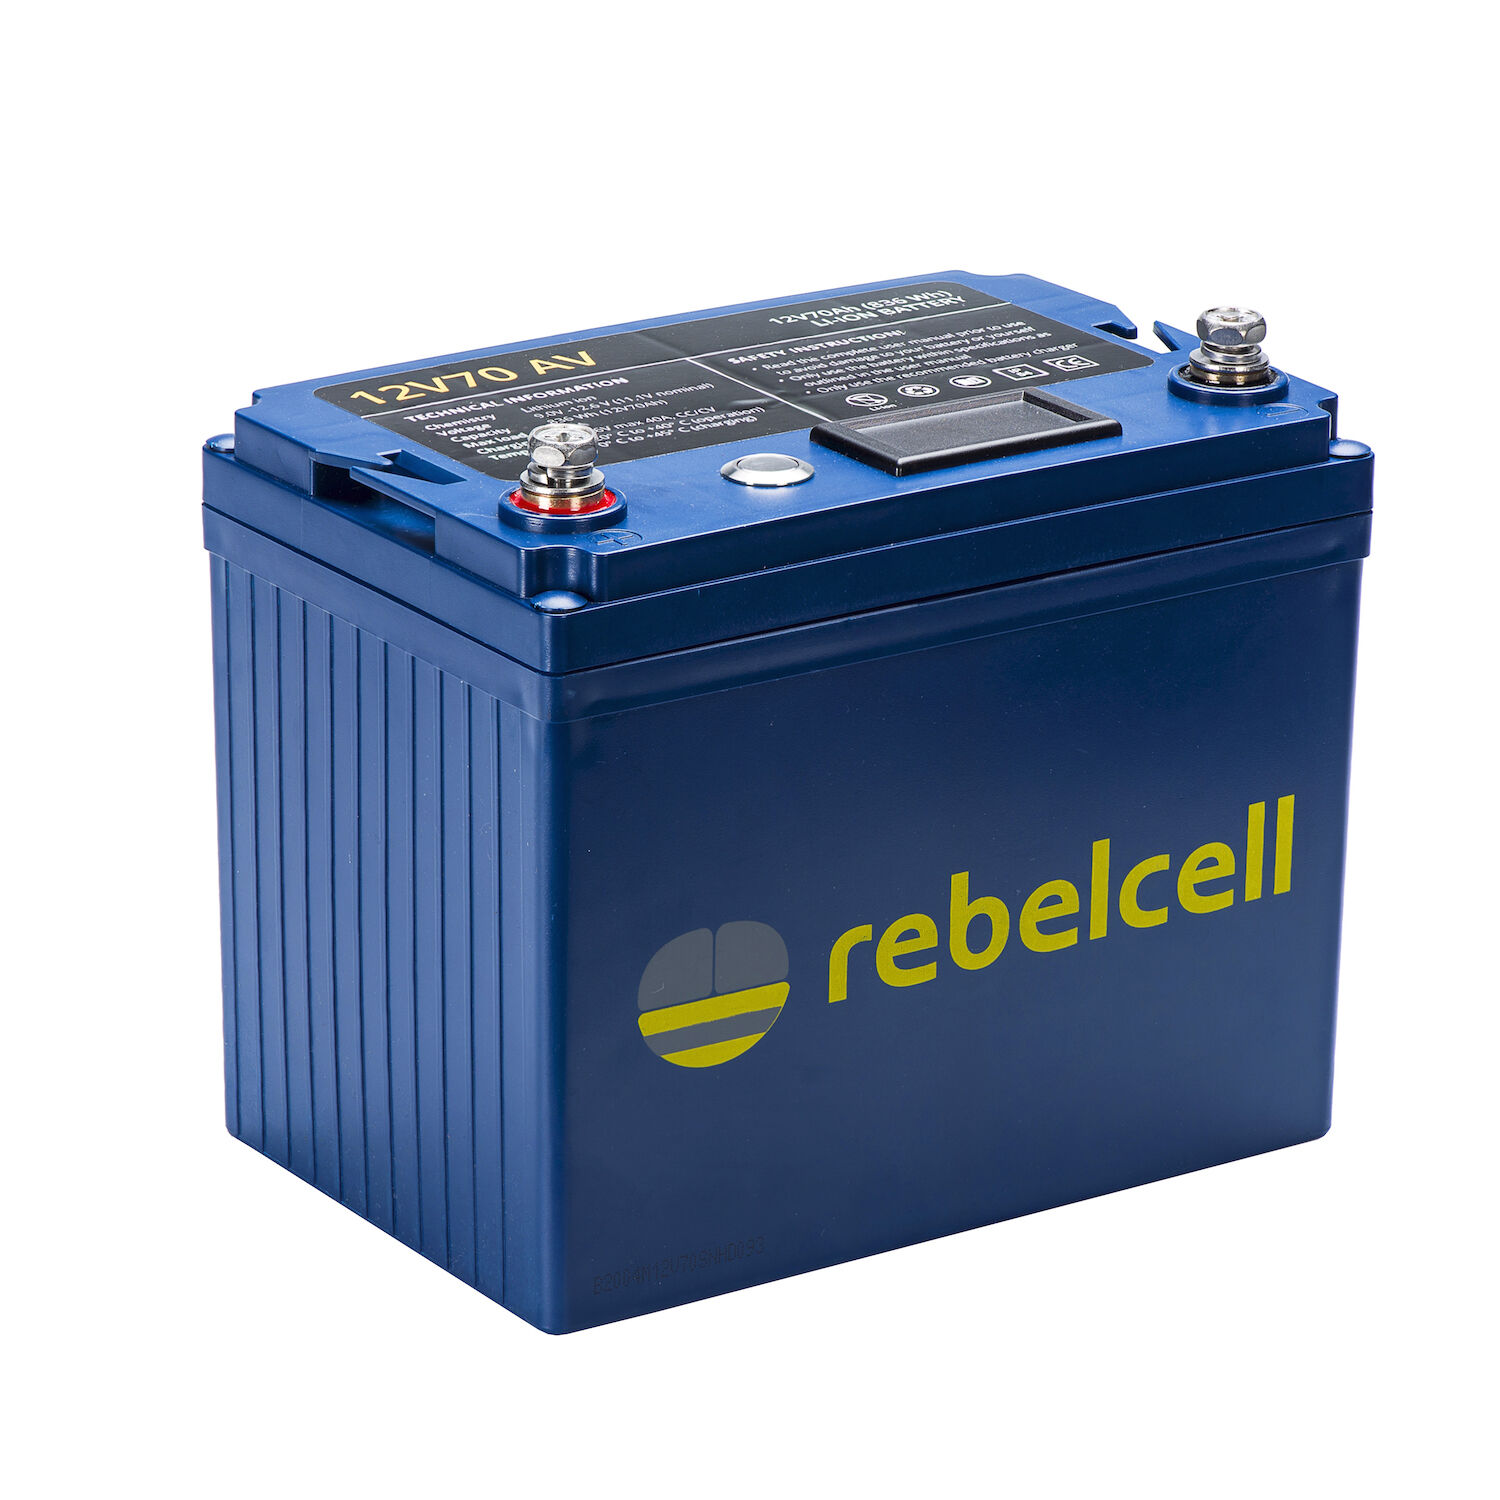 RebelCell 12V70 AV Lithium Batterie (12V 70Ah) 863Wh günstig